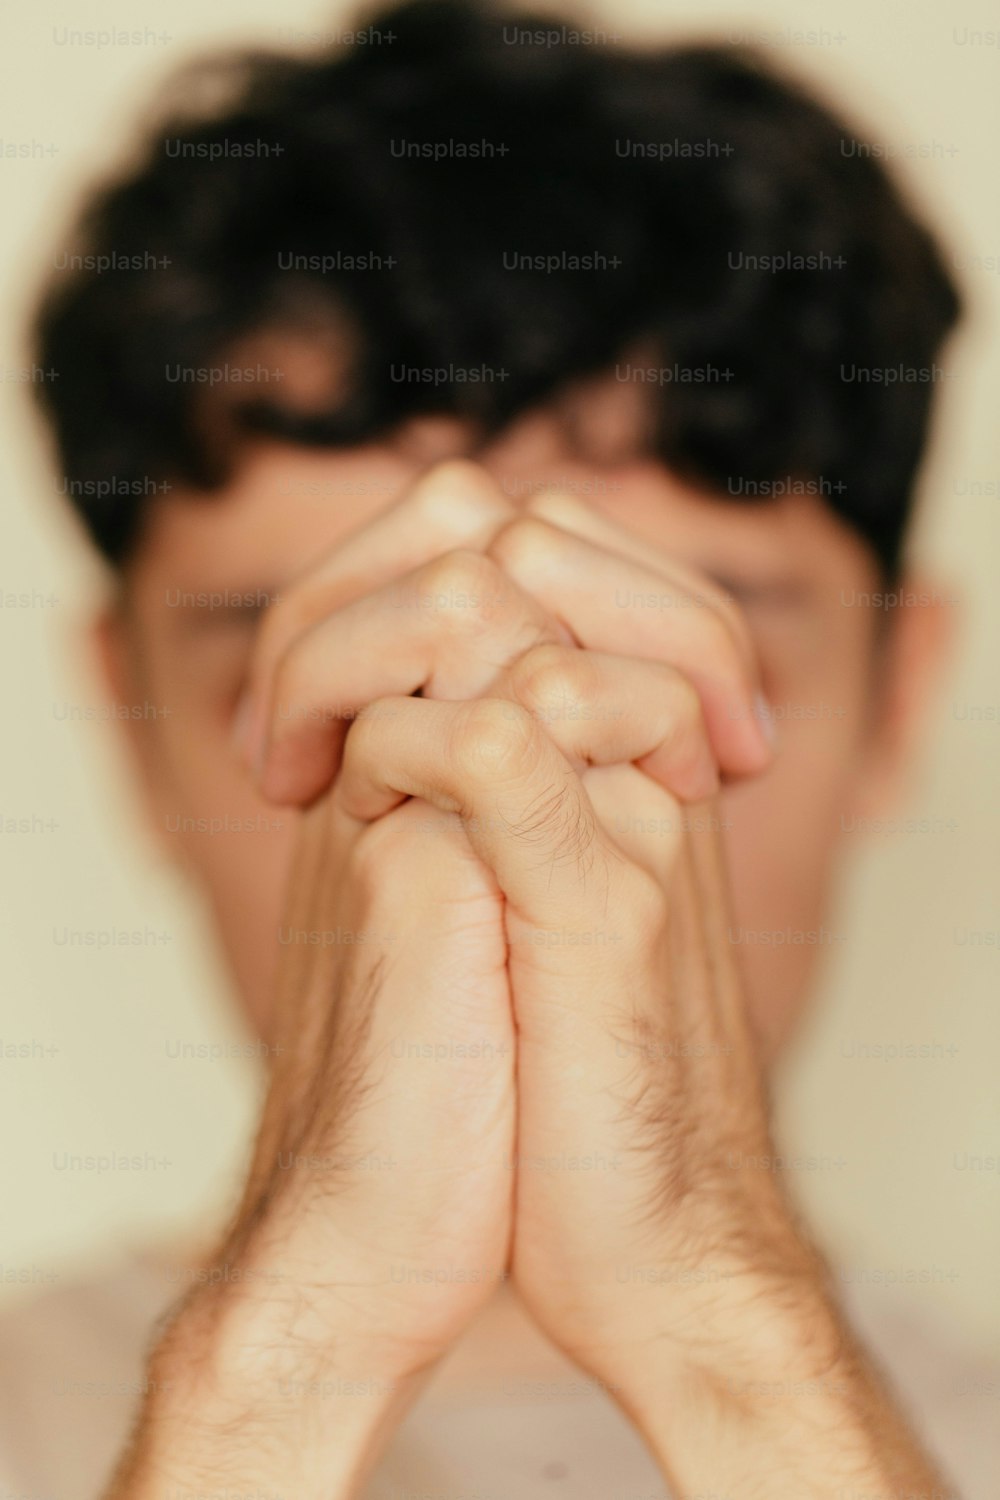 Un uomo che tiene le mani unite per pregare